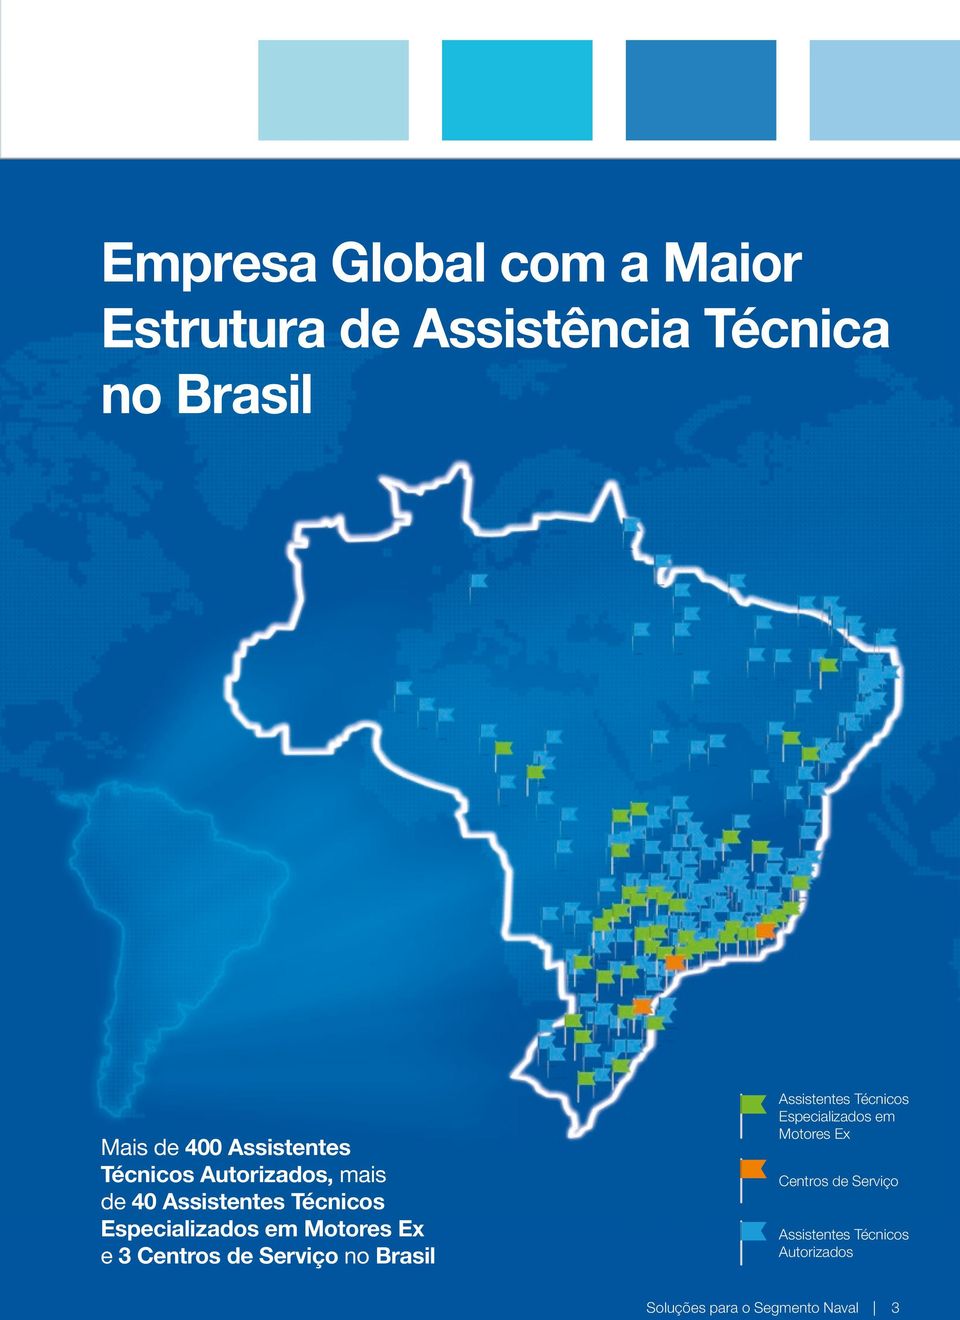 Motores Ex e 3 Centros de Serviço no Brasil Assistentes Técnicos Especializados em